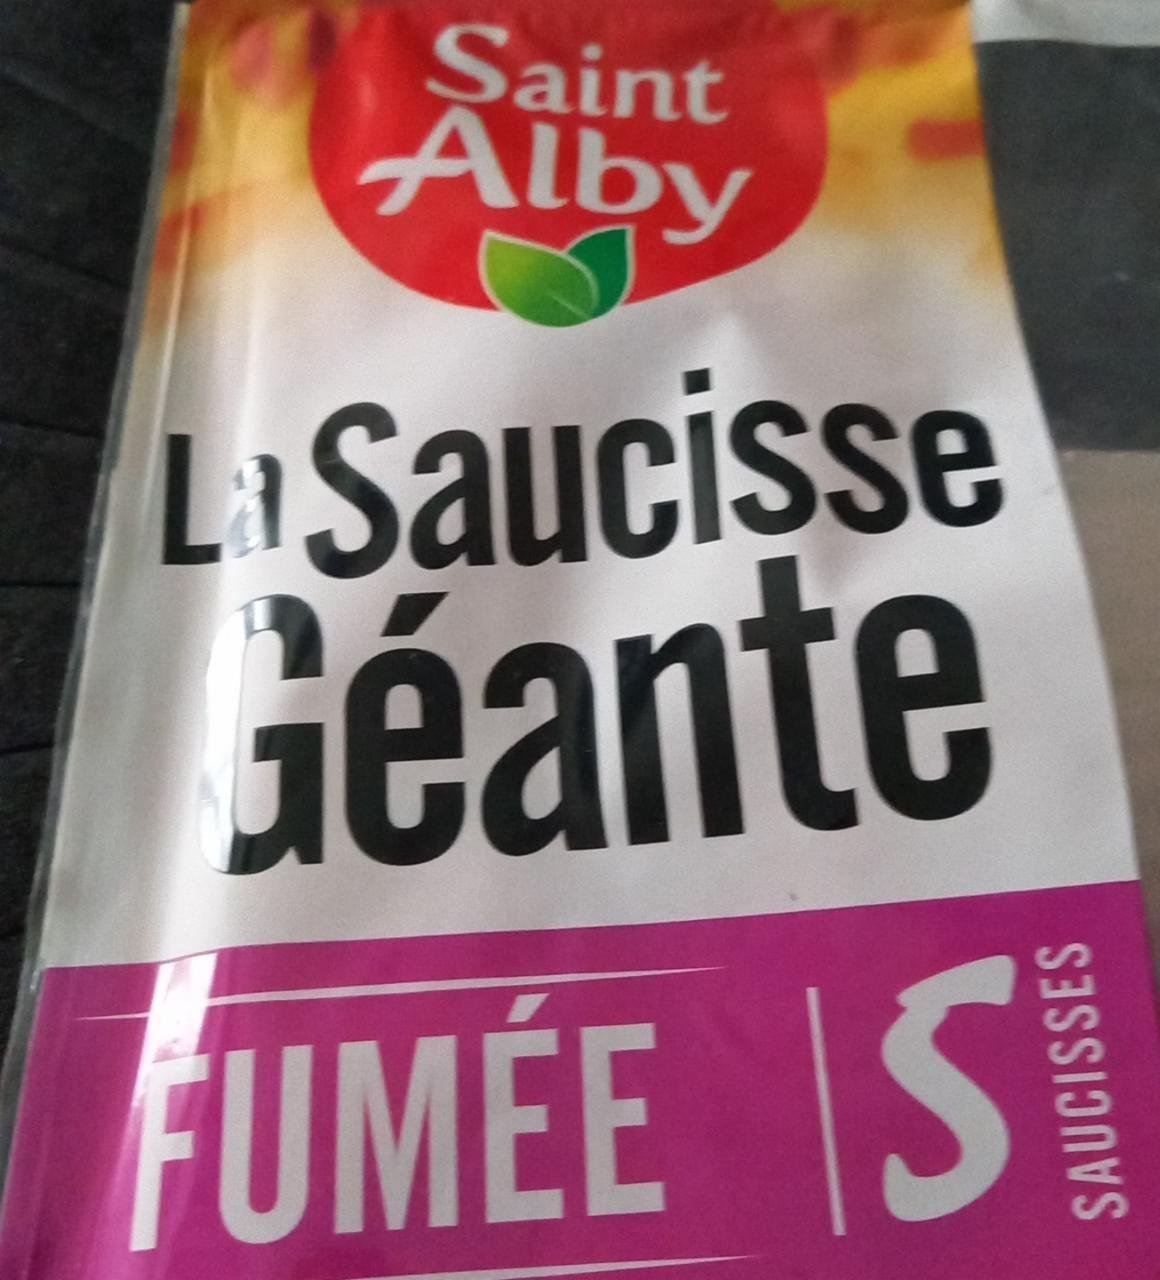 Fotografie - La Saucisse Géante Fumée Saint Alby